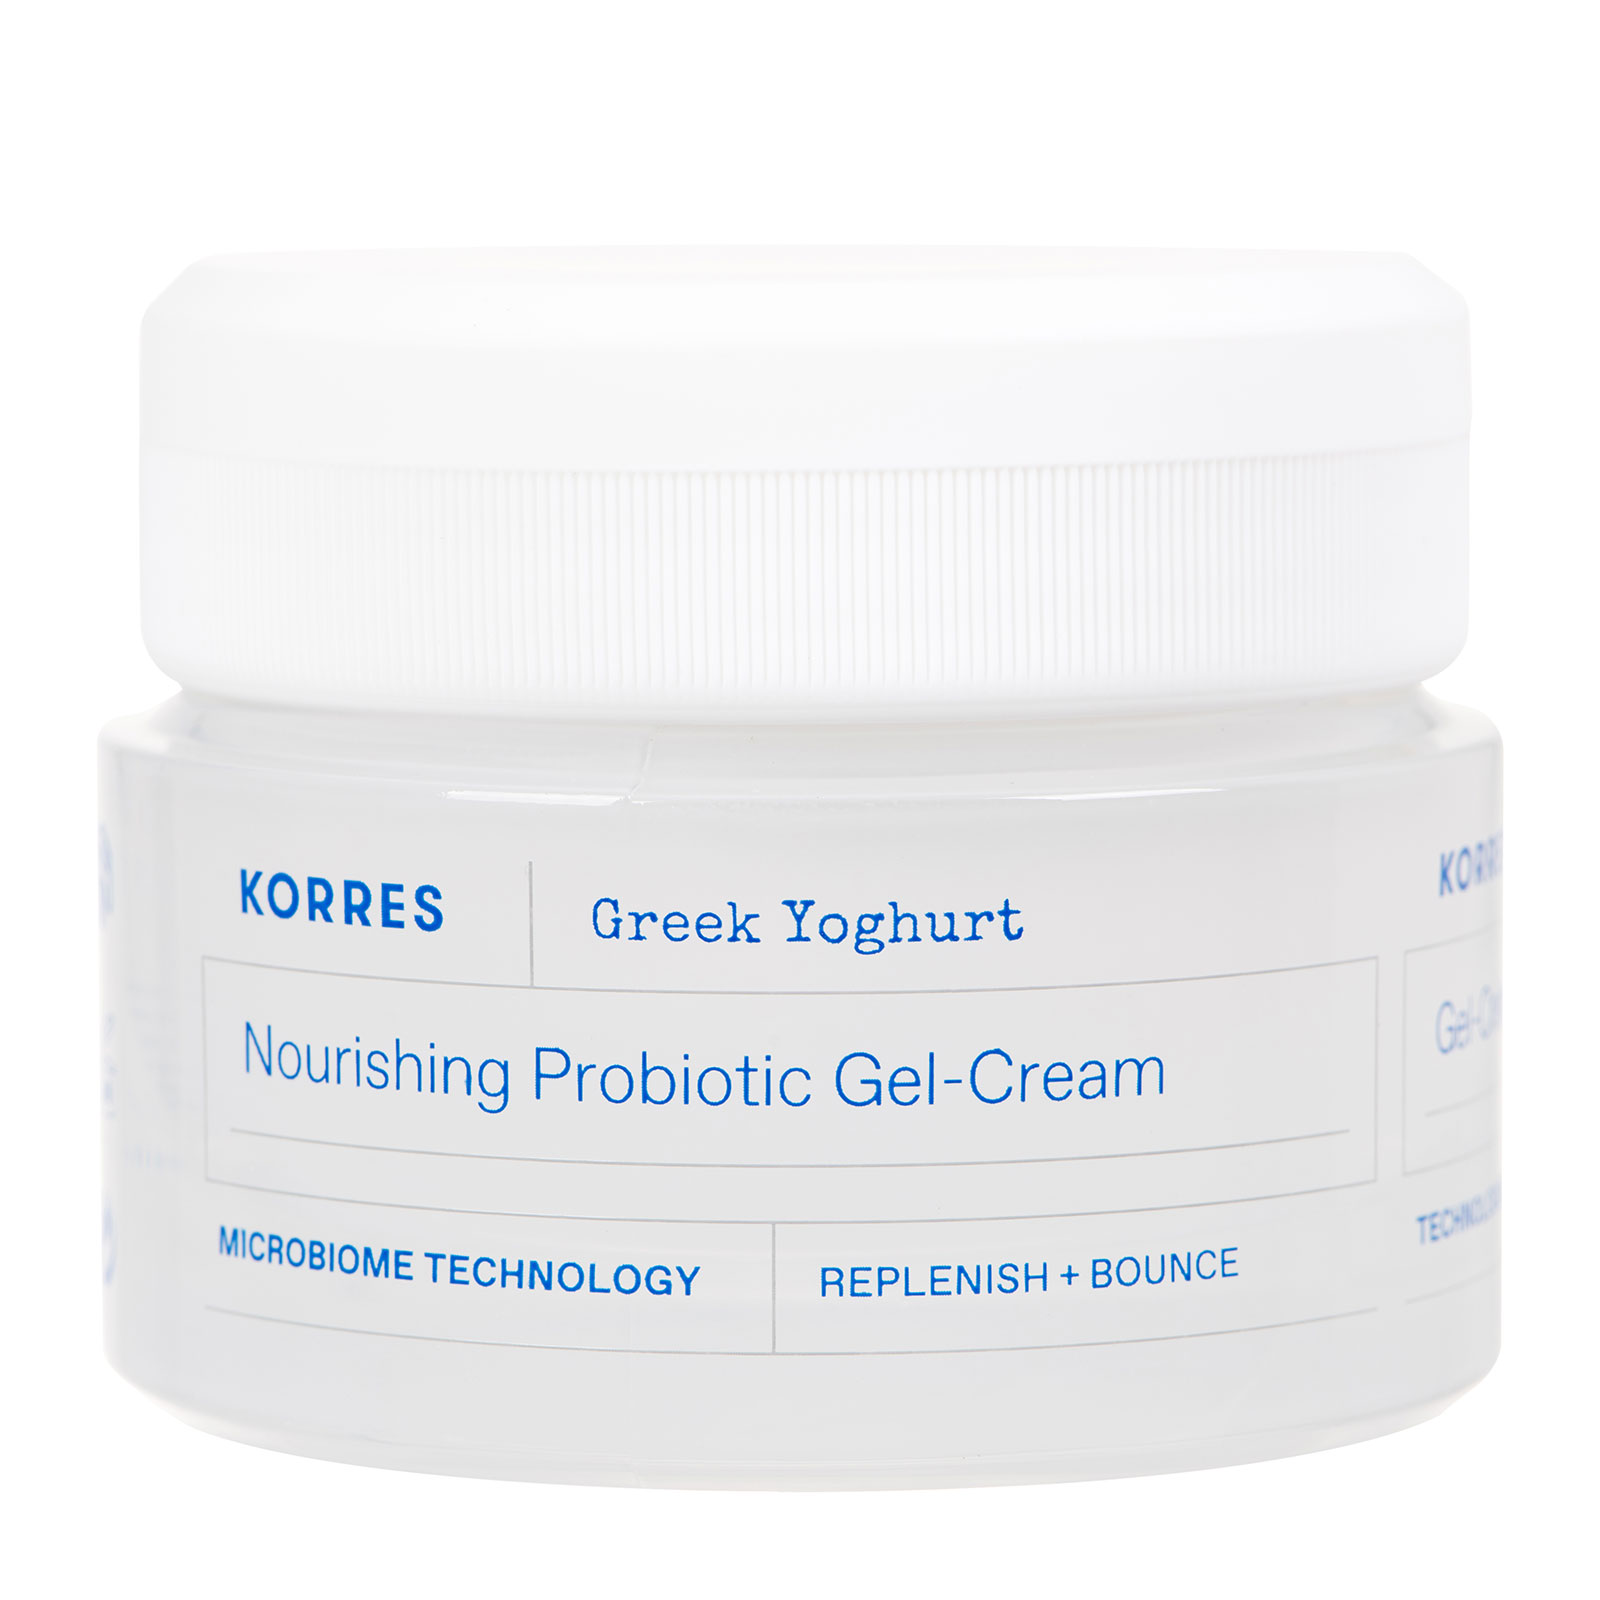 Korres Greek Yoghurt Nourishing Probiotic Gel-Cream 40Ml